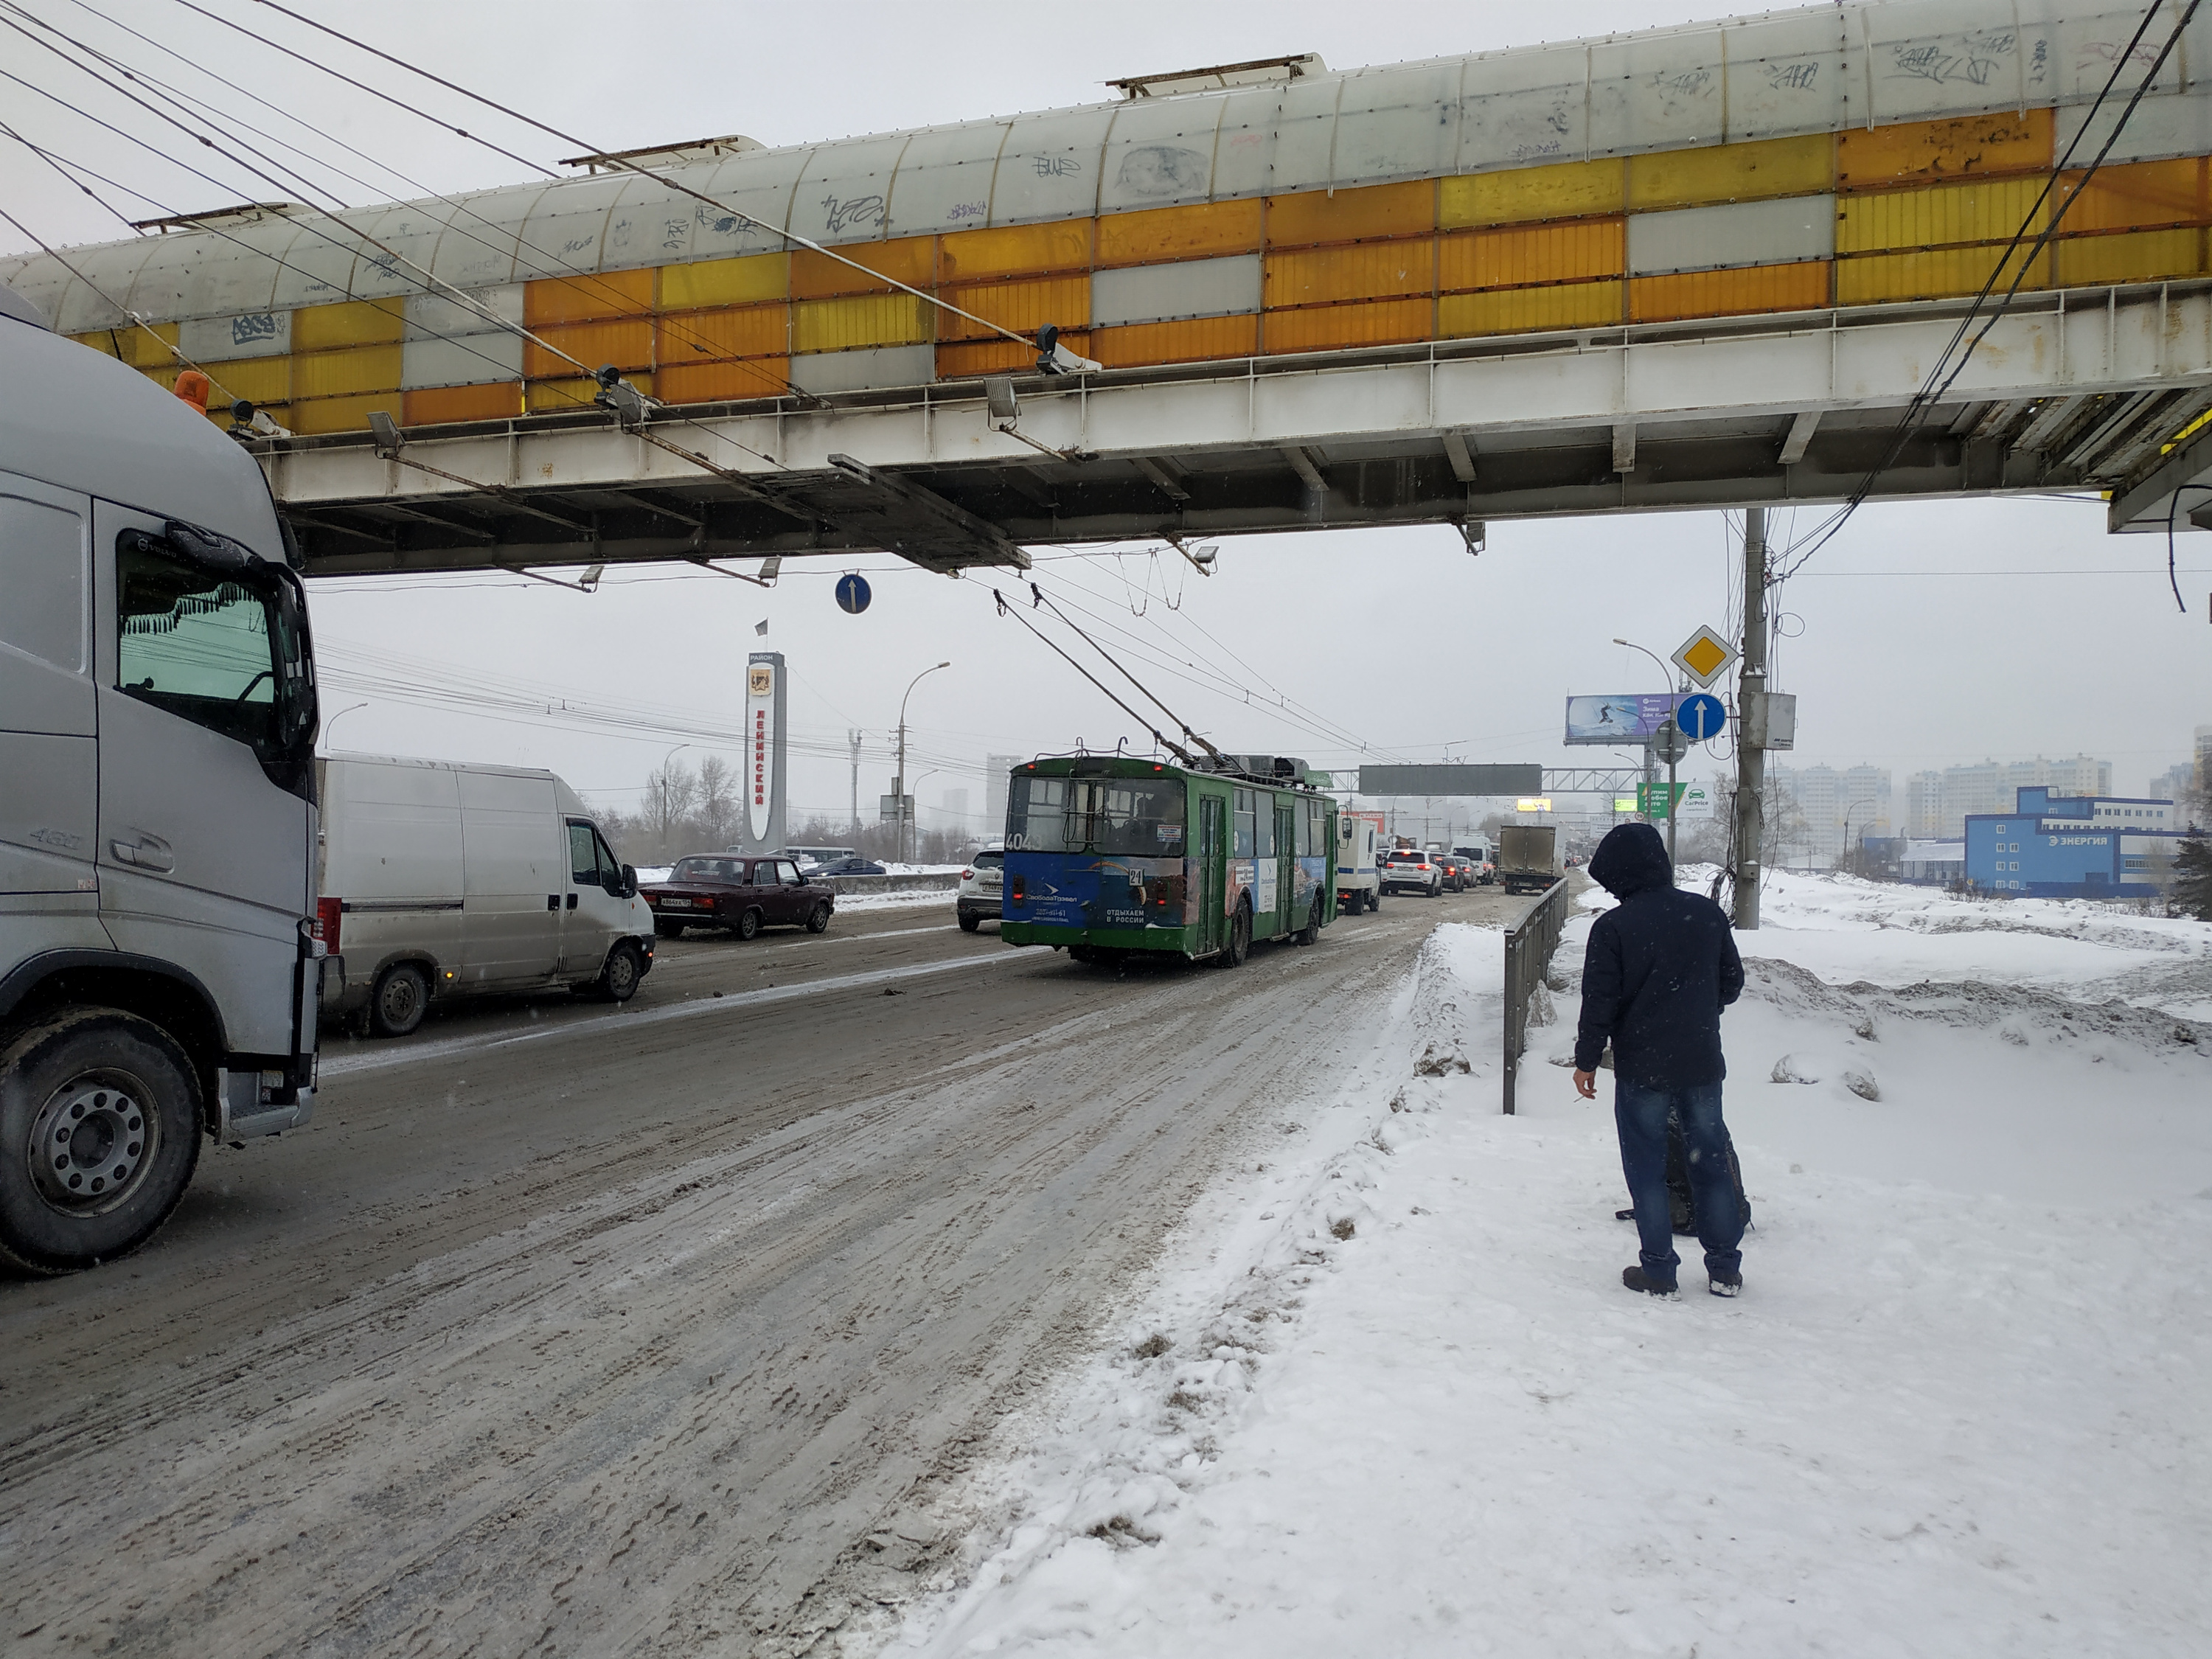 Теперь поедем быстрее: на Димитровском мосту ввели ограничение скорости до 40 км/ч